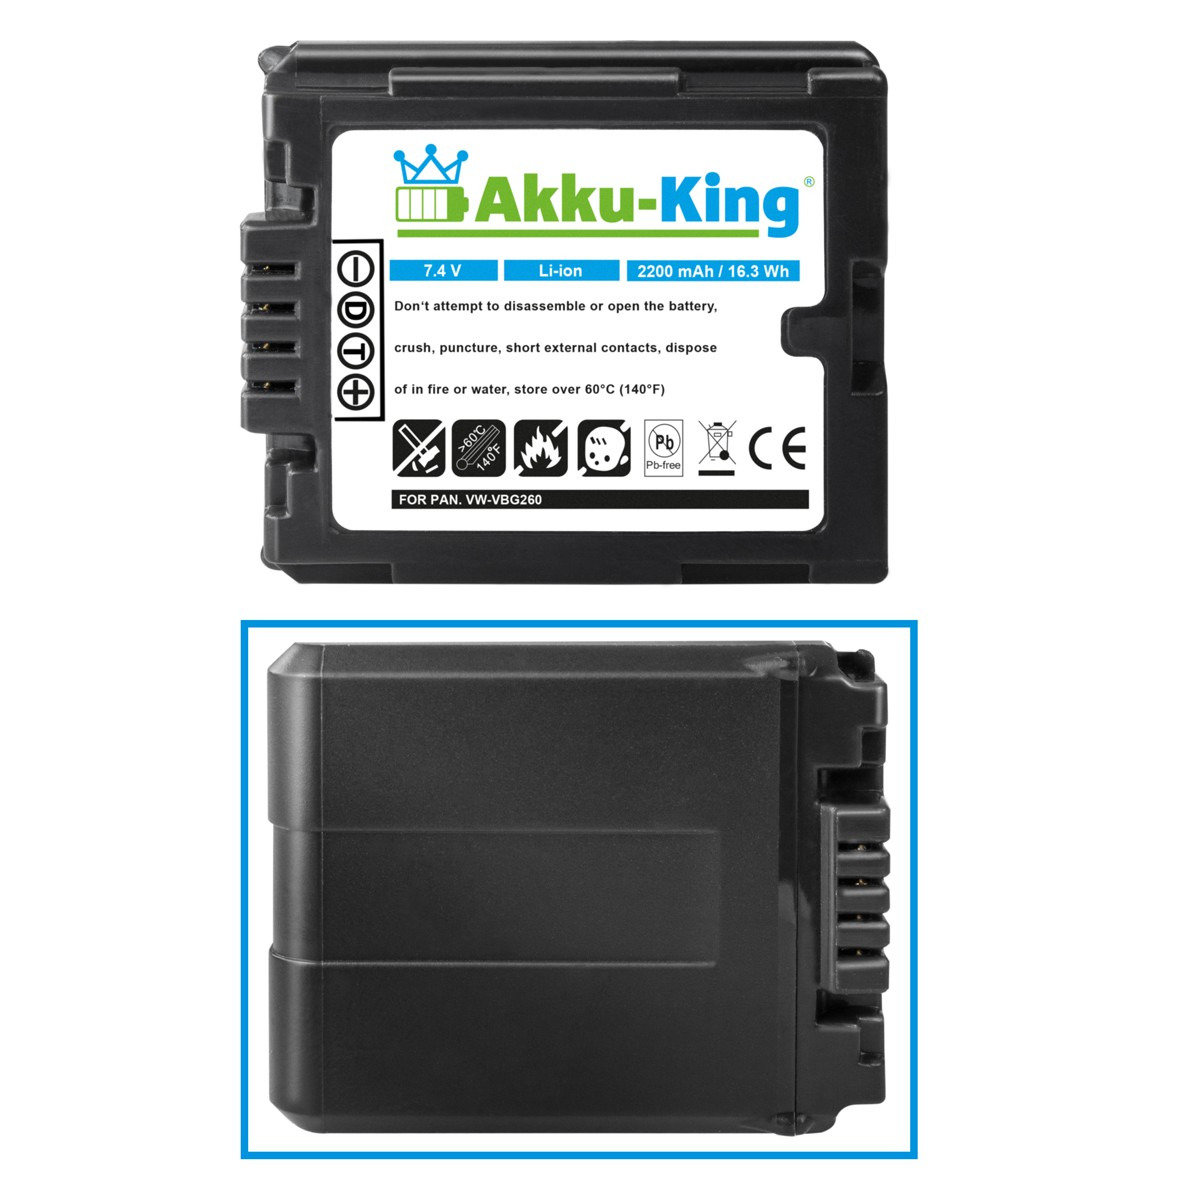 AKKU-KING Akku kompatibel mit Kamera-Akku, VW-VBG260 Panasonic Volt, Li-Ion 2200mAh 7.4